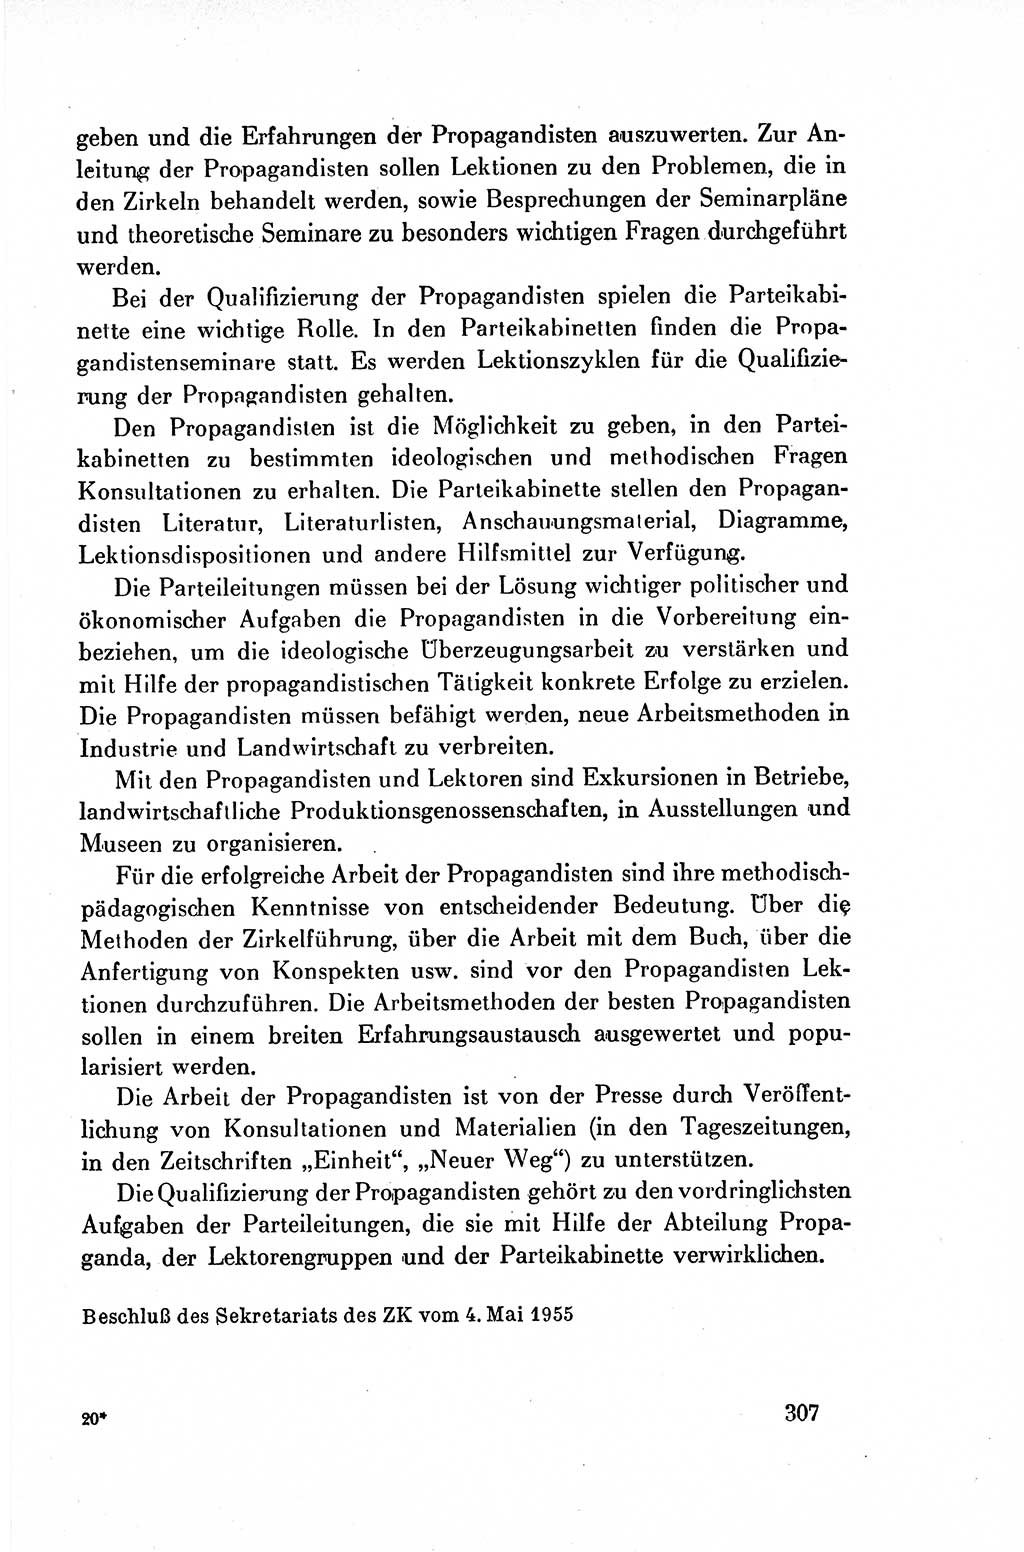 Dokumente der Sozialistischen Einheitspartei Deutschlands (SED) [Deutsche Demokratische Republik (DDR)] 1954-1955, Seite 307 (Dok. SED DDR 1954-1955, S. 307)